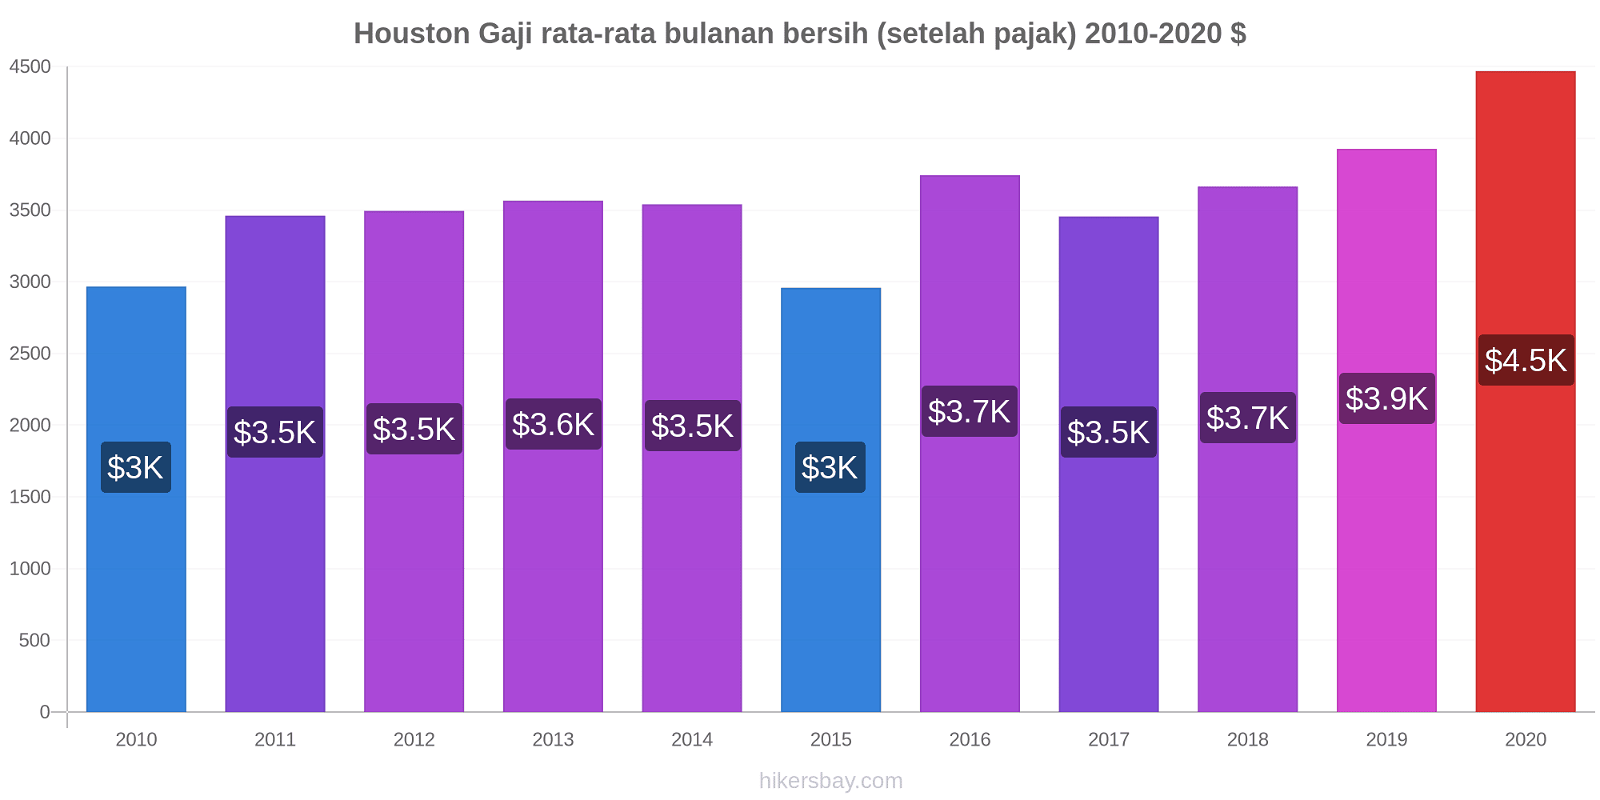 Houston perubahan harga Gaji rata-rata bulanan bersih (setelah pajak) hikersbay.com